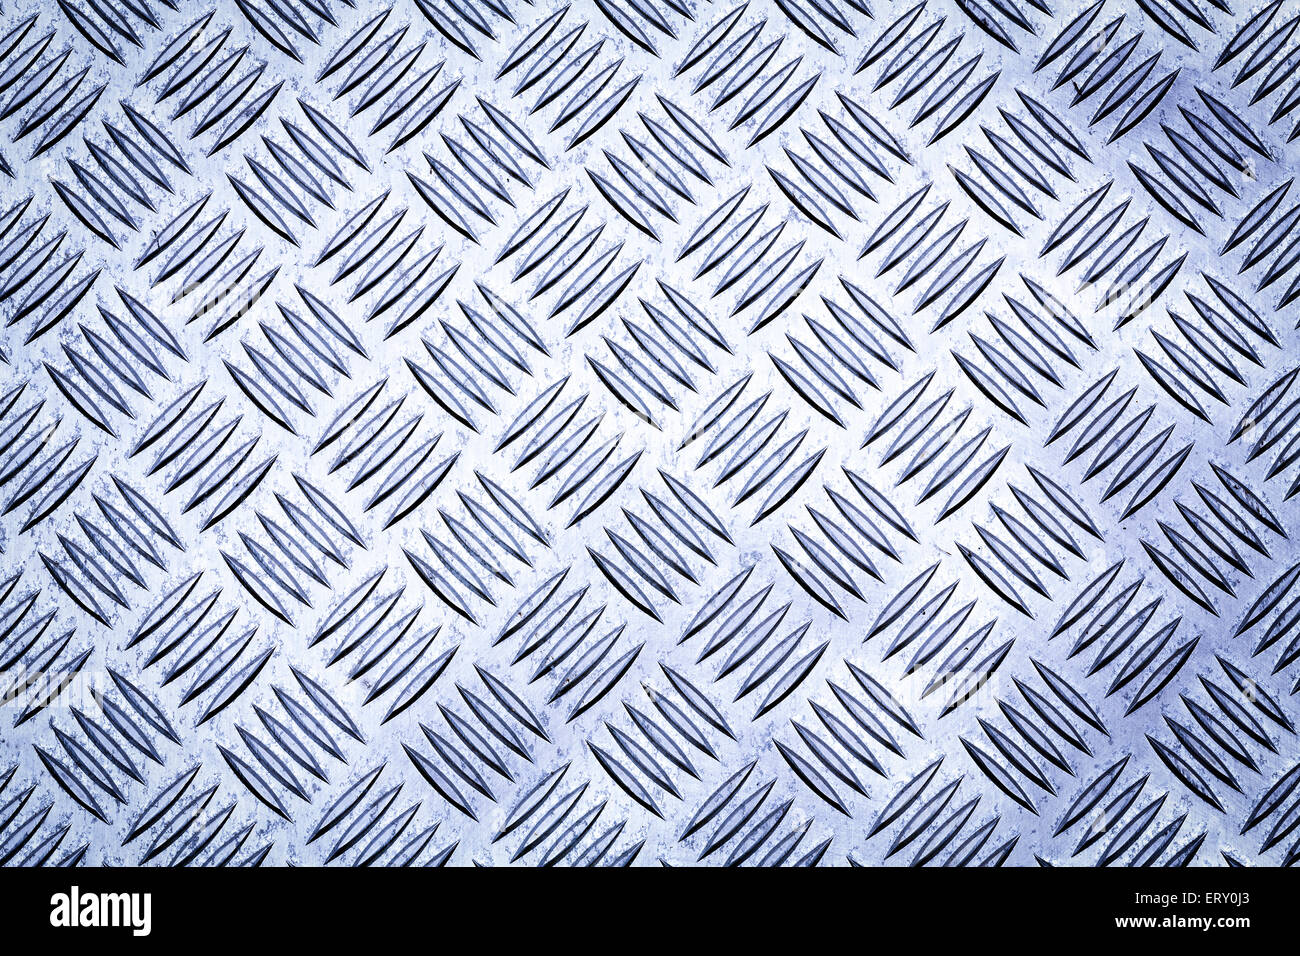 Blaue farbige Diamant-Platte, Riffelblech, Lauffläche Platte, Cross Hatch Schleuderplatte und Durbar Bodenplatte für Textur Hintergrund. Stockfoto